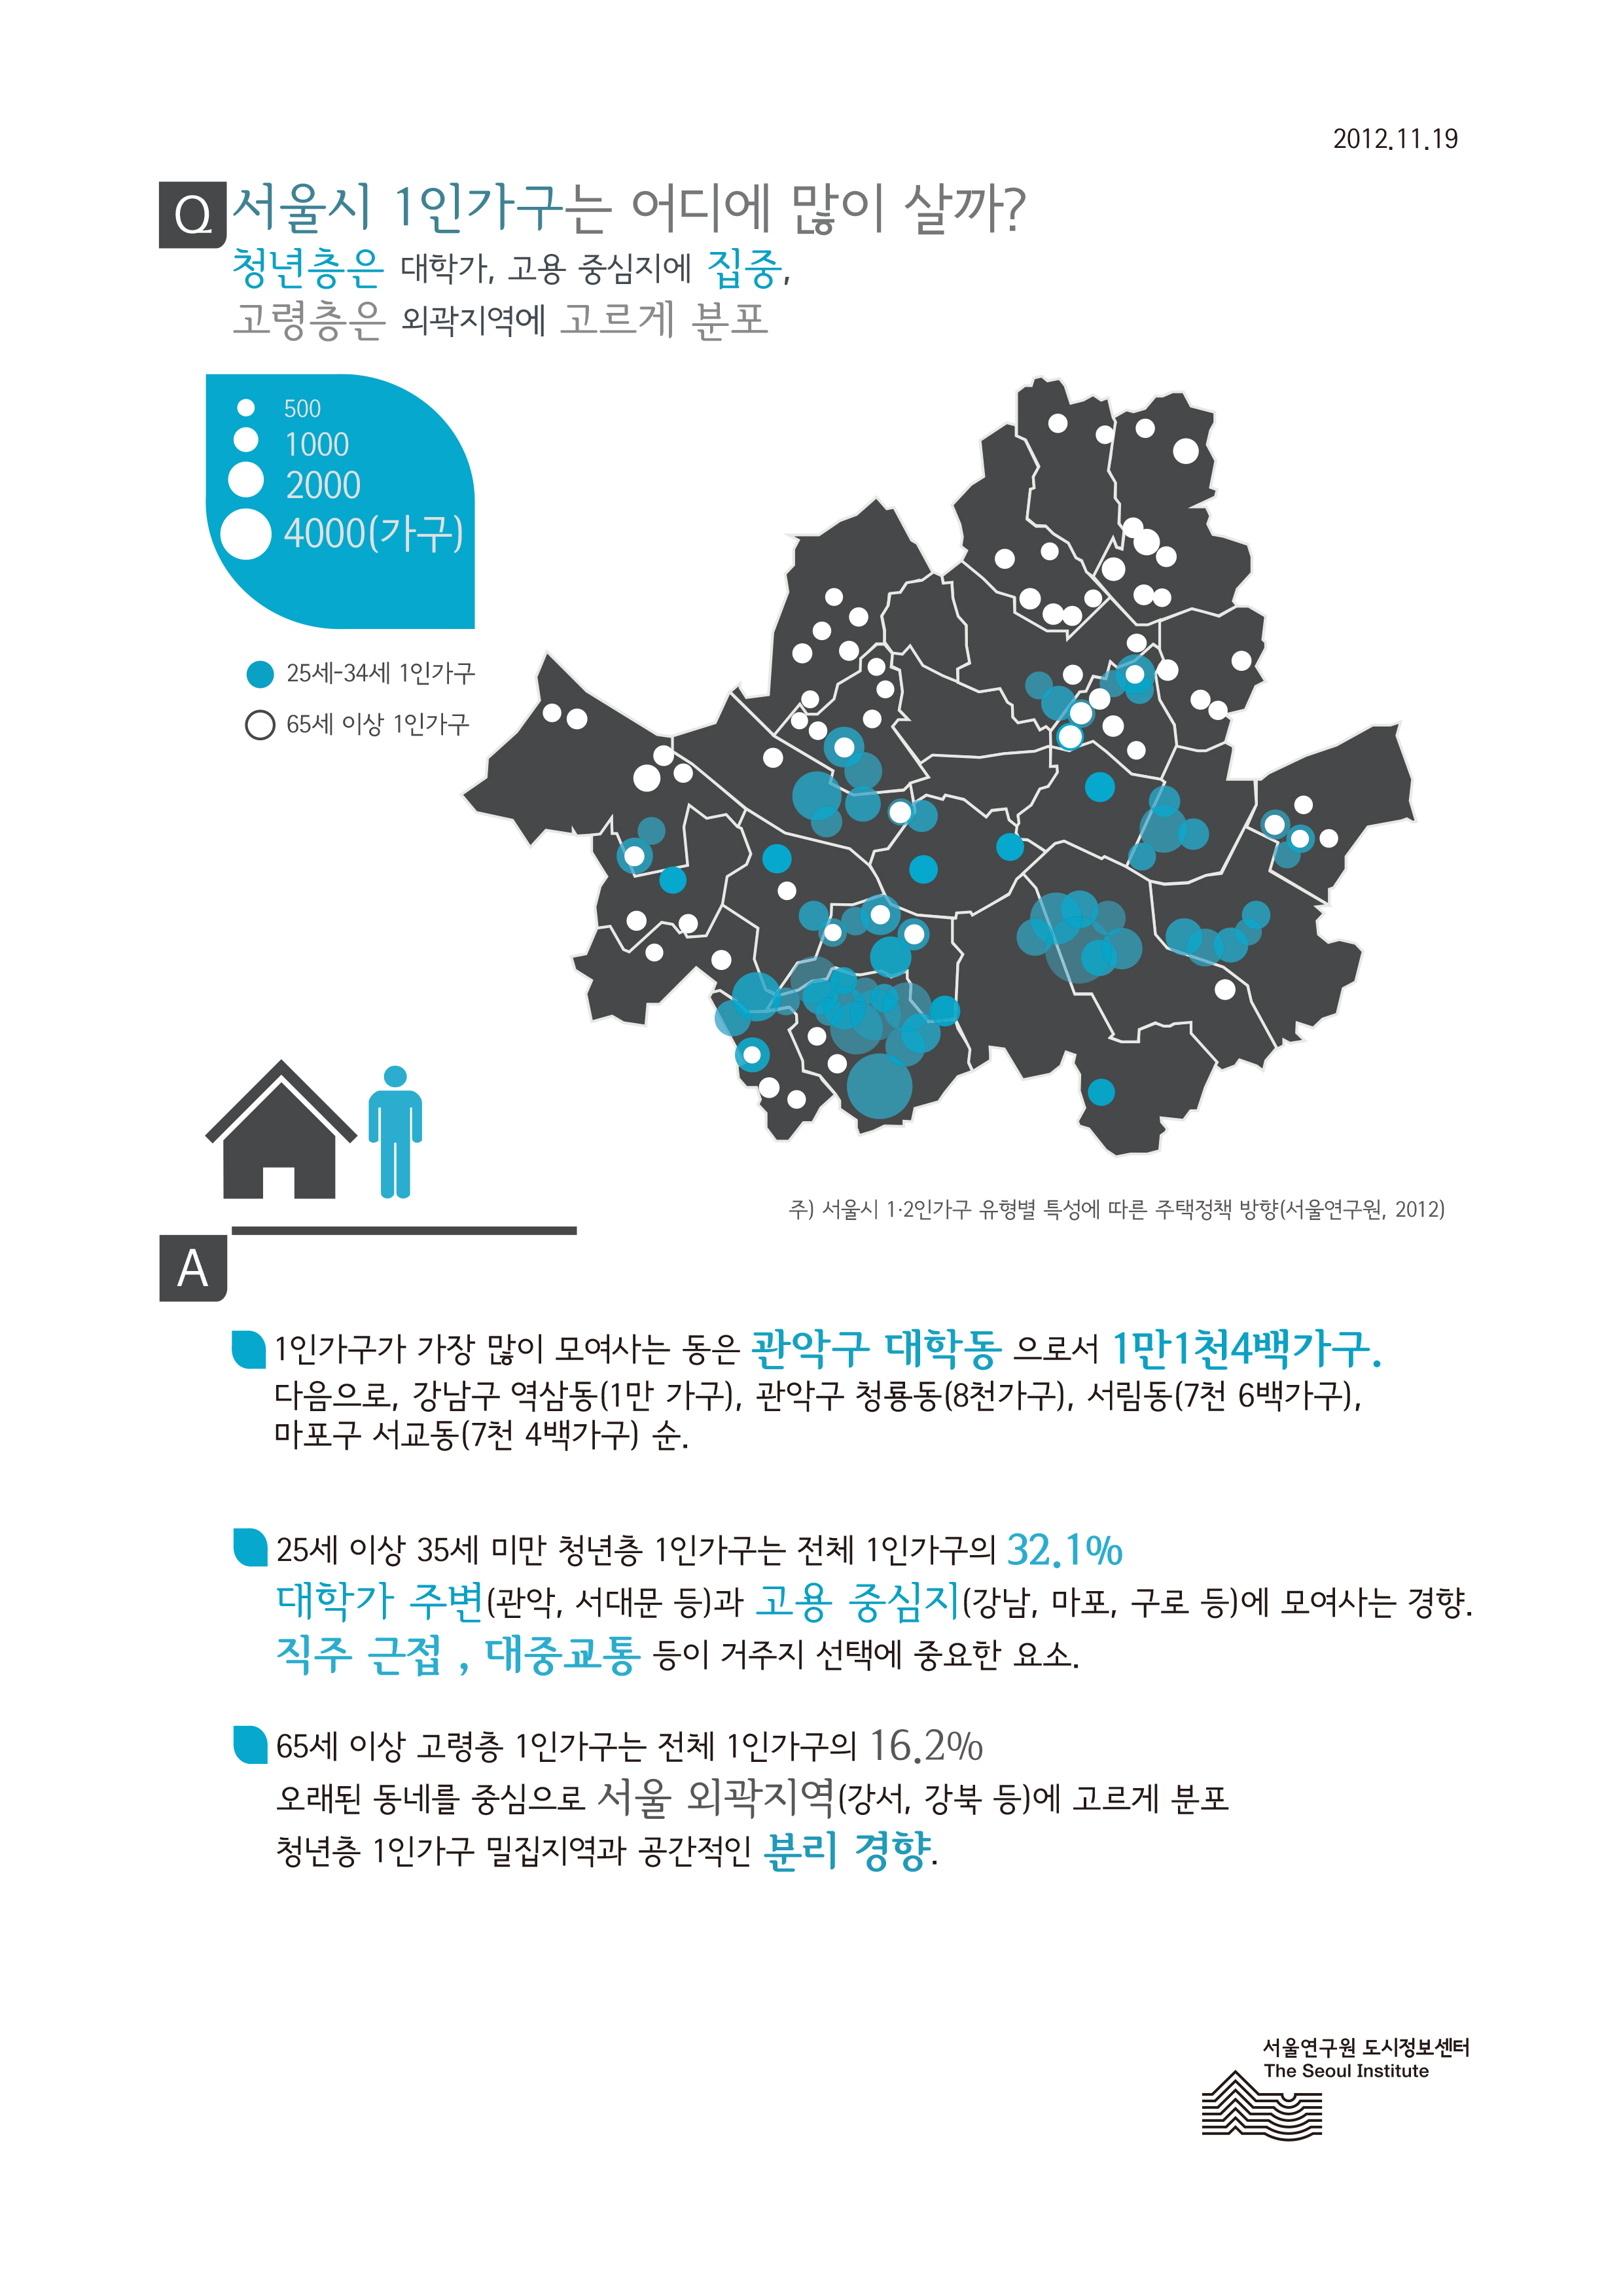 서울시 1인가구는 어디에 많이 살까? 서울인포그래픽스 제8호 2012년 11월 19일 청년층은 대학가, 고용 중심지에 집중, 고령층은 서울 외곽지역에 고르게 분포함으로 정리될 수 있습니다. 인포그래픽으로 제공되는 그래픽은 하단에 표로 자세히 제공됩니다.